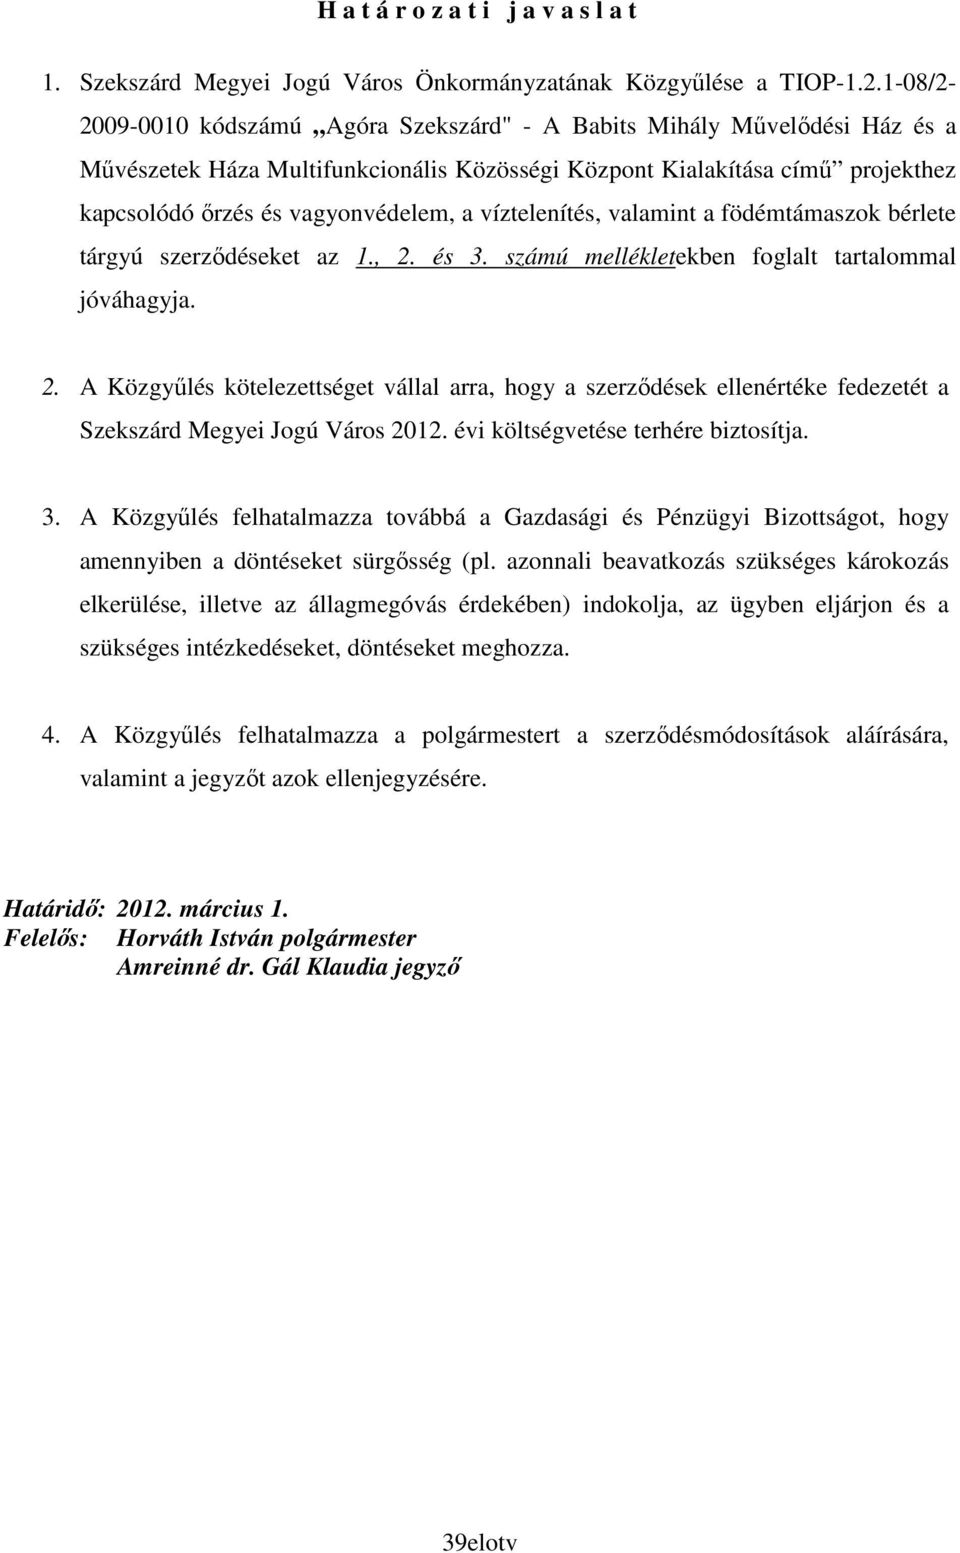 víztelenítés, valamint a födémtámaszok bérlete tárgyú szerzıdéseket az 1., 2. és 3. számú mellékletekben foglalt tartalommal jóváhagyja. 2. A Közgyőlés kötelezettséget vállal arra, hogy a szerzıdések ellenértéke fedezetét a Szekszárd Megyei Jogú Város 2012.